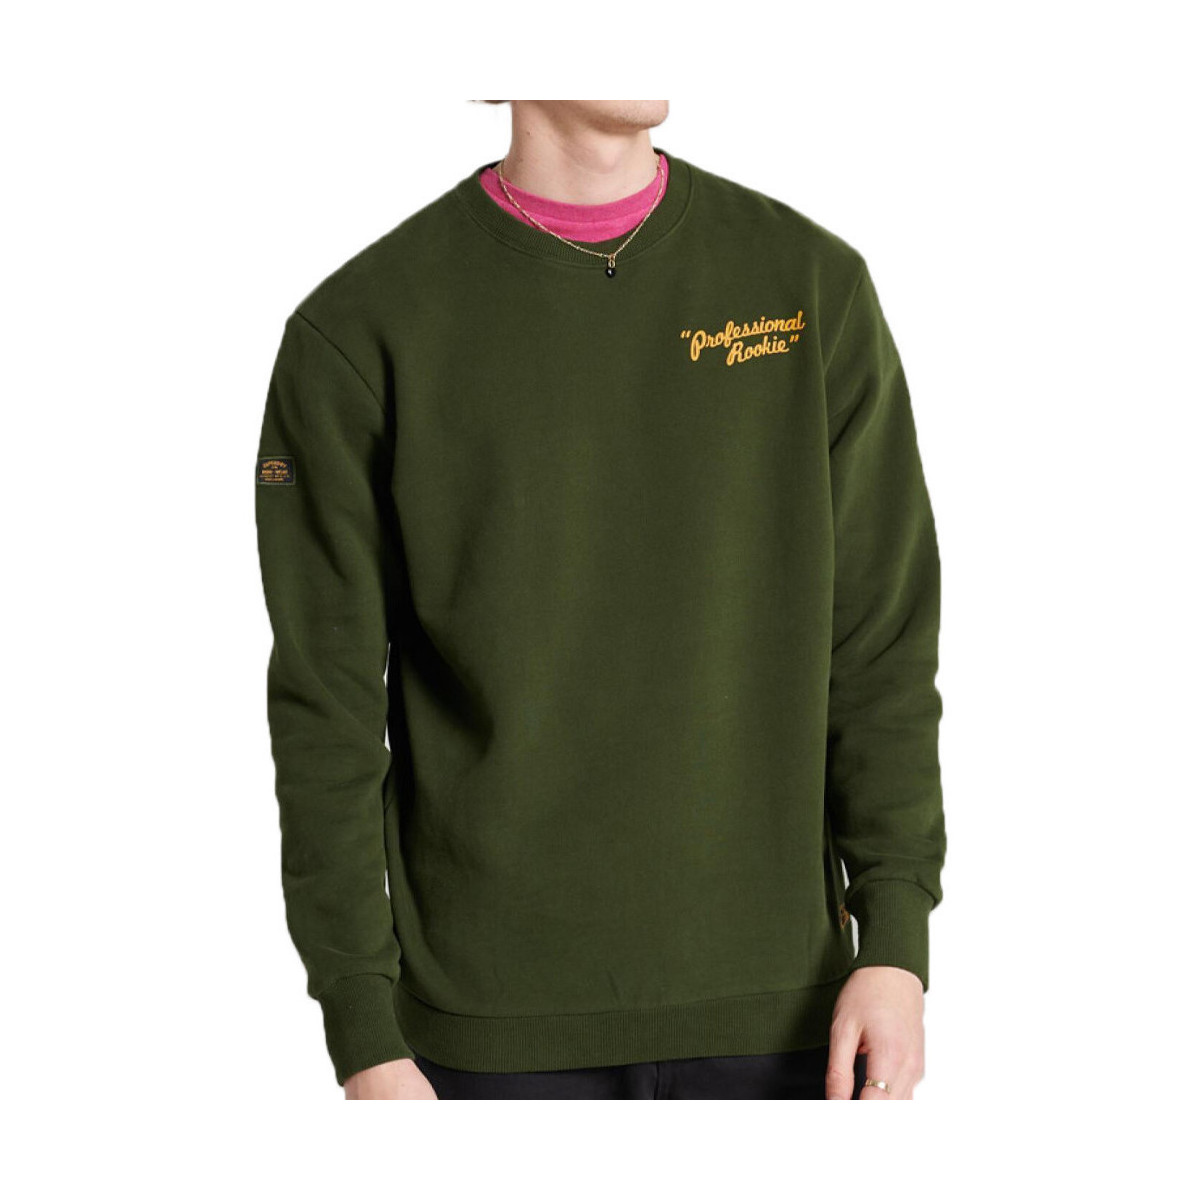 Textiel Heren Sweaters / Sweatshirts Superdry  Groen